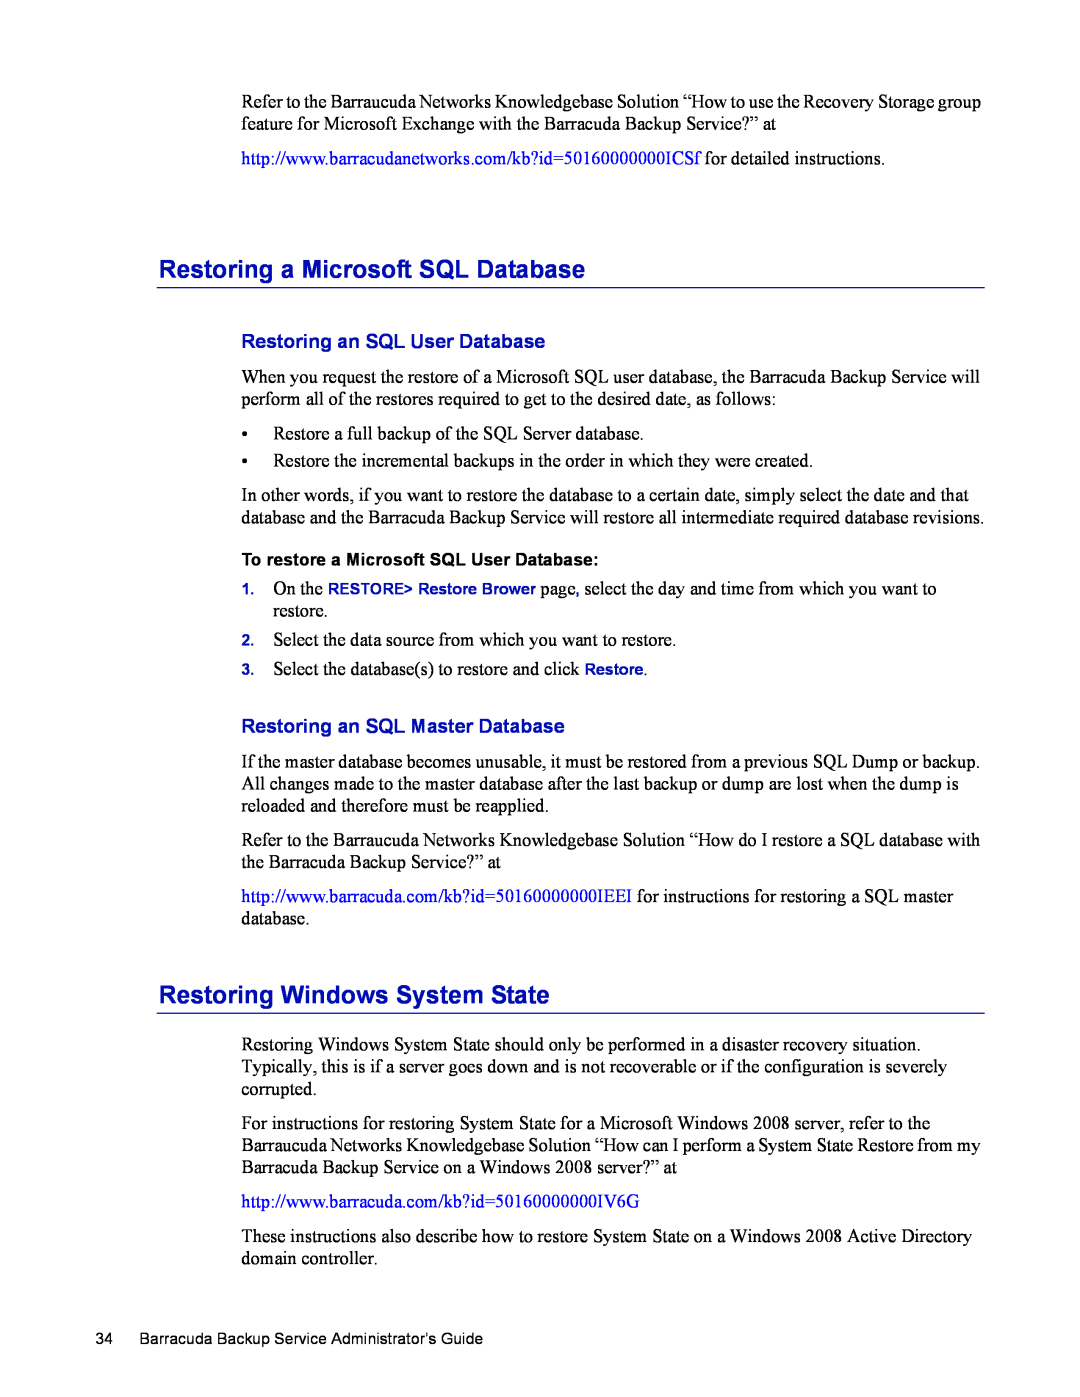 Barracuda Networks 4 Restoring a Microsoft SQL Database, Restoring Windows System State, Restoring an SQL User Database 